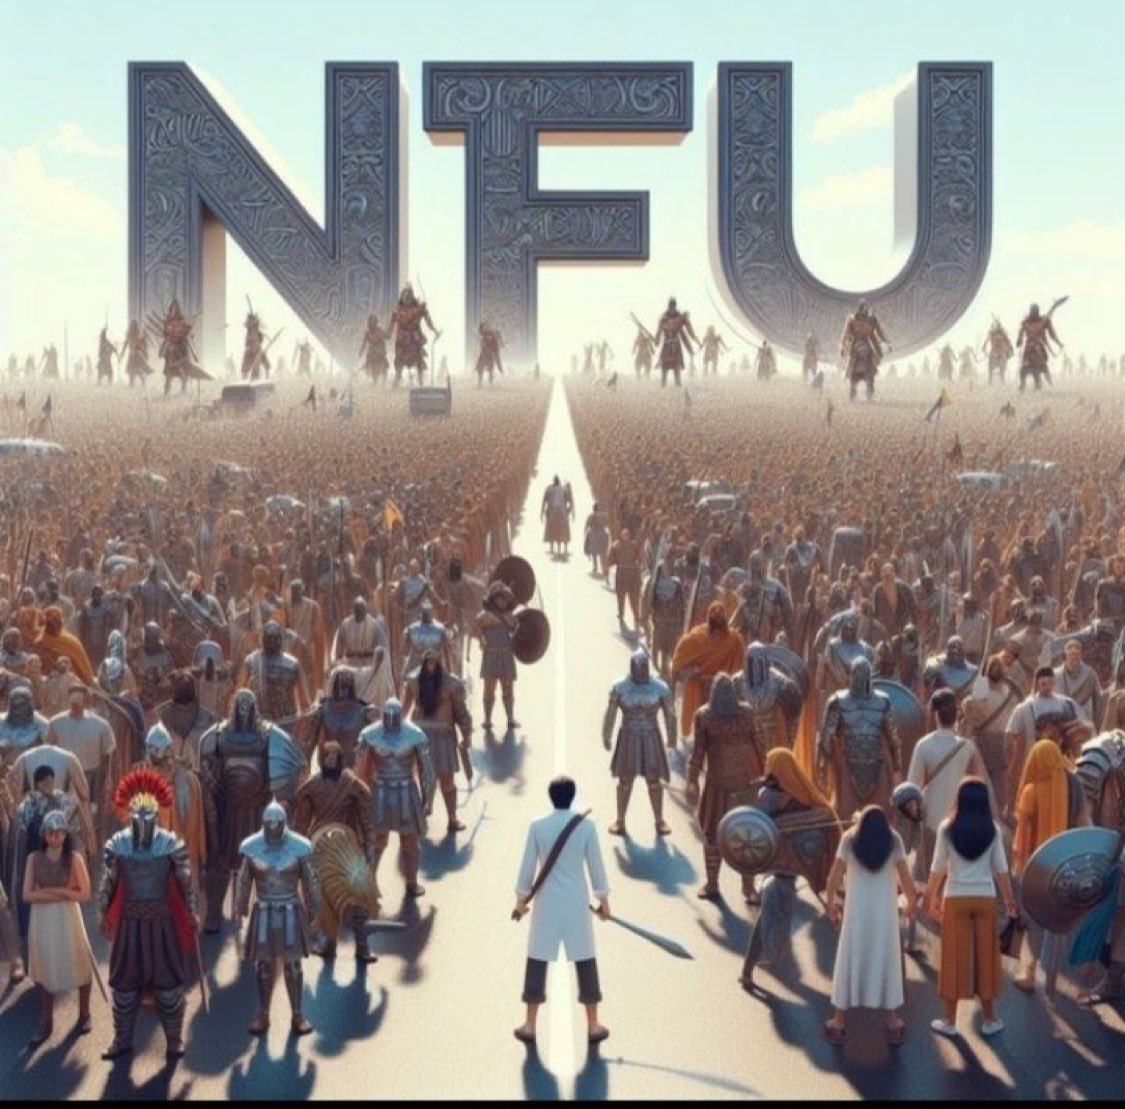 संडे स्पेशल प्रोग्राम में आपका स्वागत है🤗 @NFUofficial1 के सदस्यों को हर रविवार आपस में जोड़ने का कार्यक्रम रहता है 🔁 इस पोस्ट को #रिट्वीट करें और रिट्वीट करने वाले एक-दूसरे को #फॉलो कर लें। follow - @KhunkhunaMoin #National_freedom_union #नेशनल_फ्रीडम_यूनियन